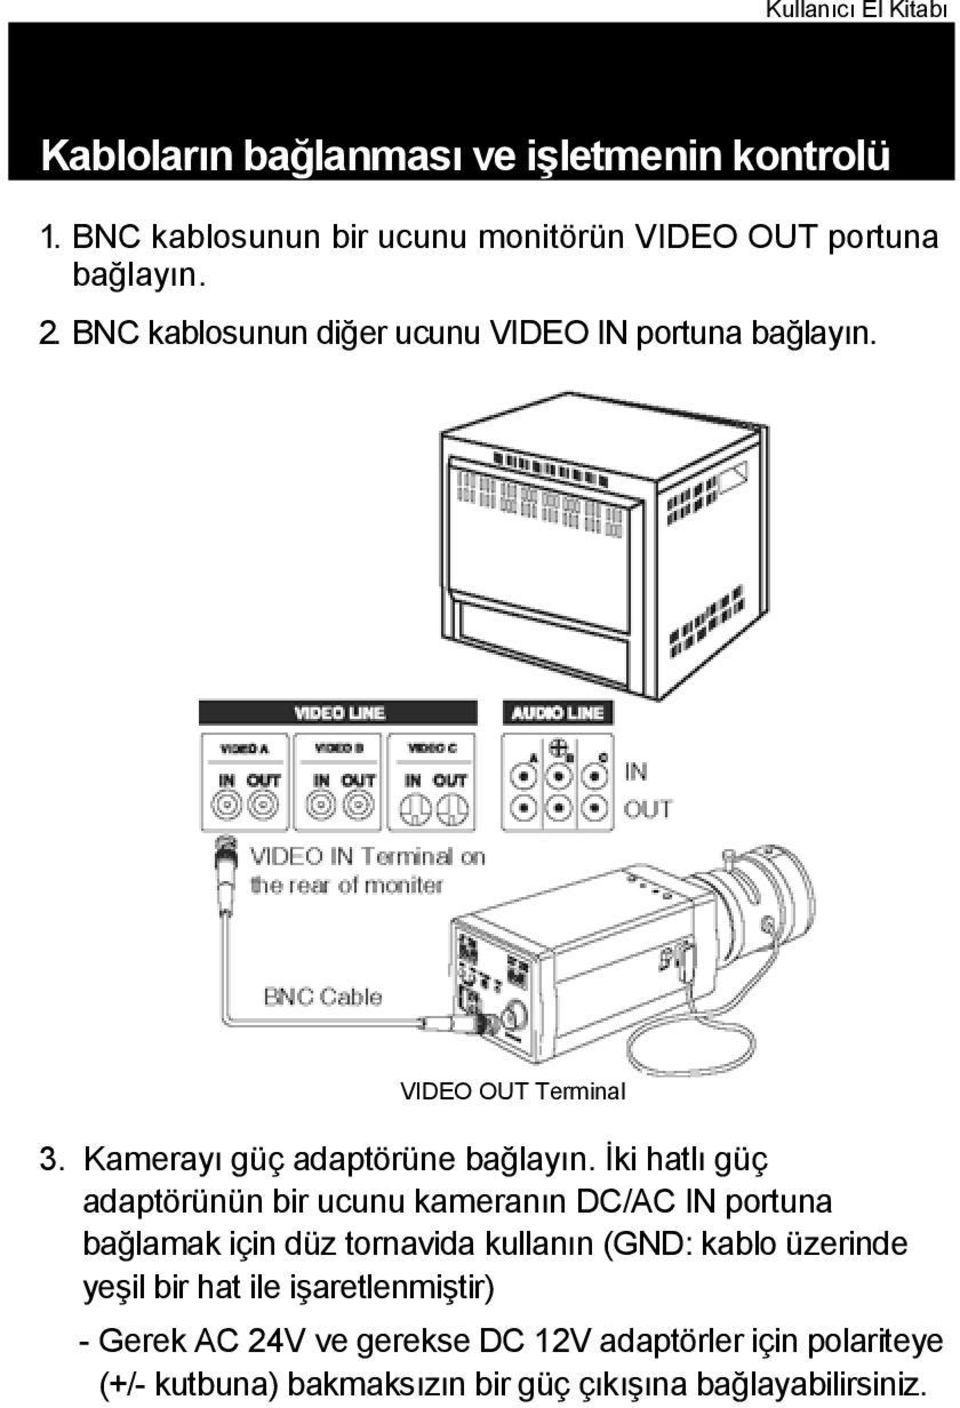 İki hatlı güç adaptörünün bir ucunu kameranın DC/AC IN portuna bağlamak için düz tornavida kullanın (GND: kablo üzerinde